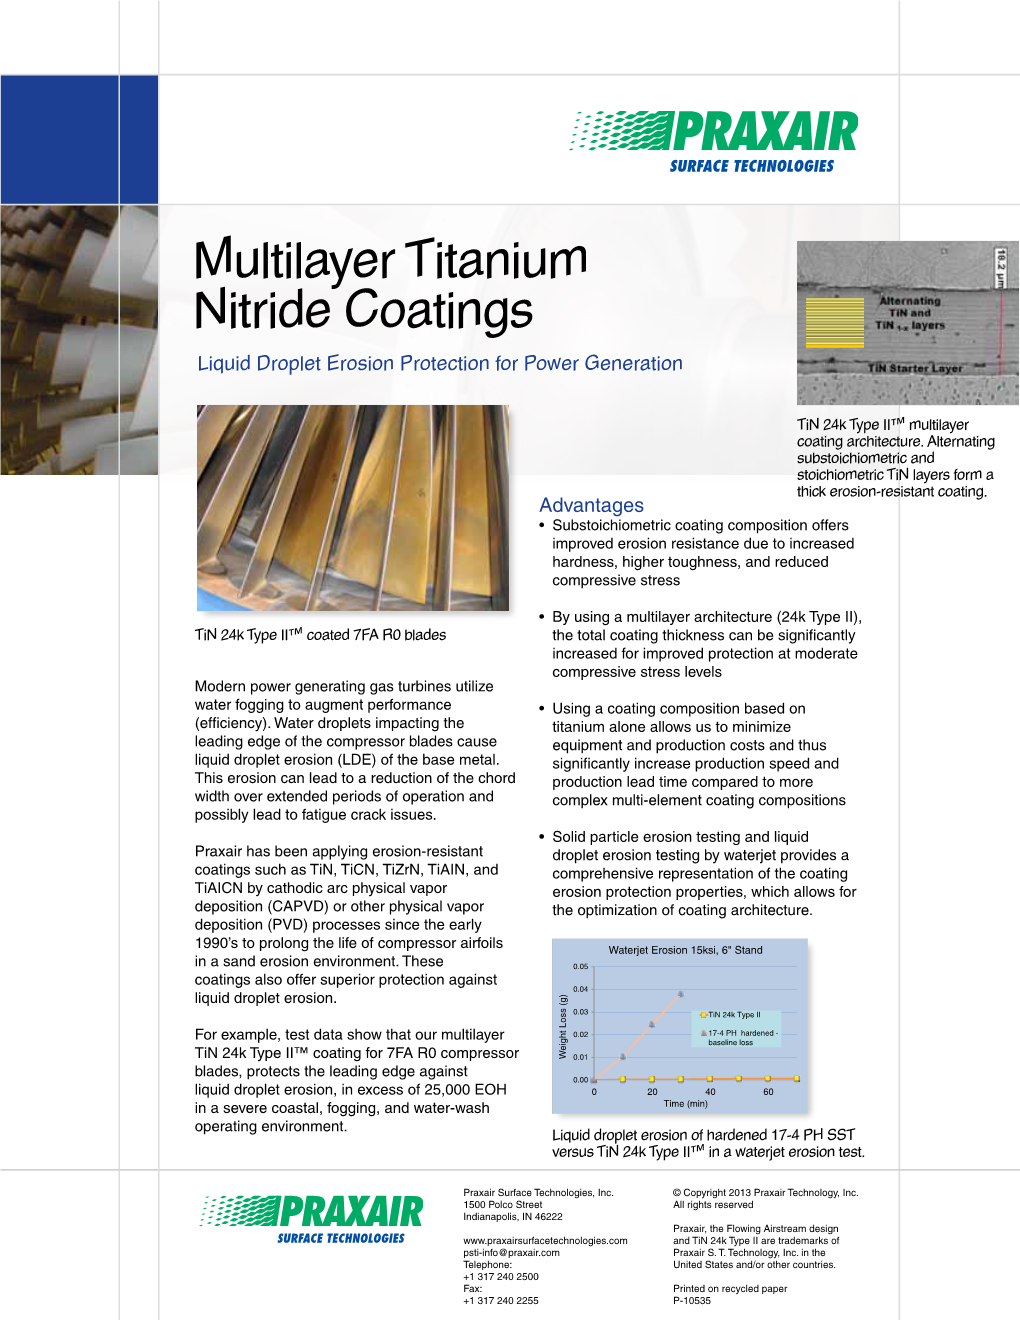 Titanium Nitride Coatings for Liquid Droplet Erosion